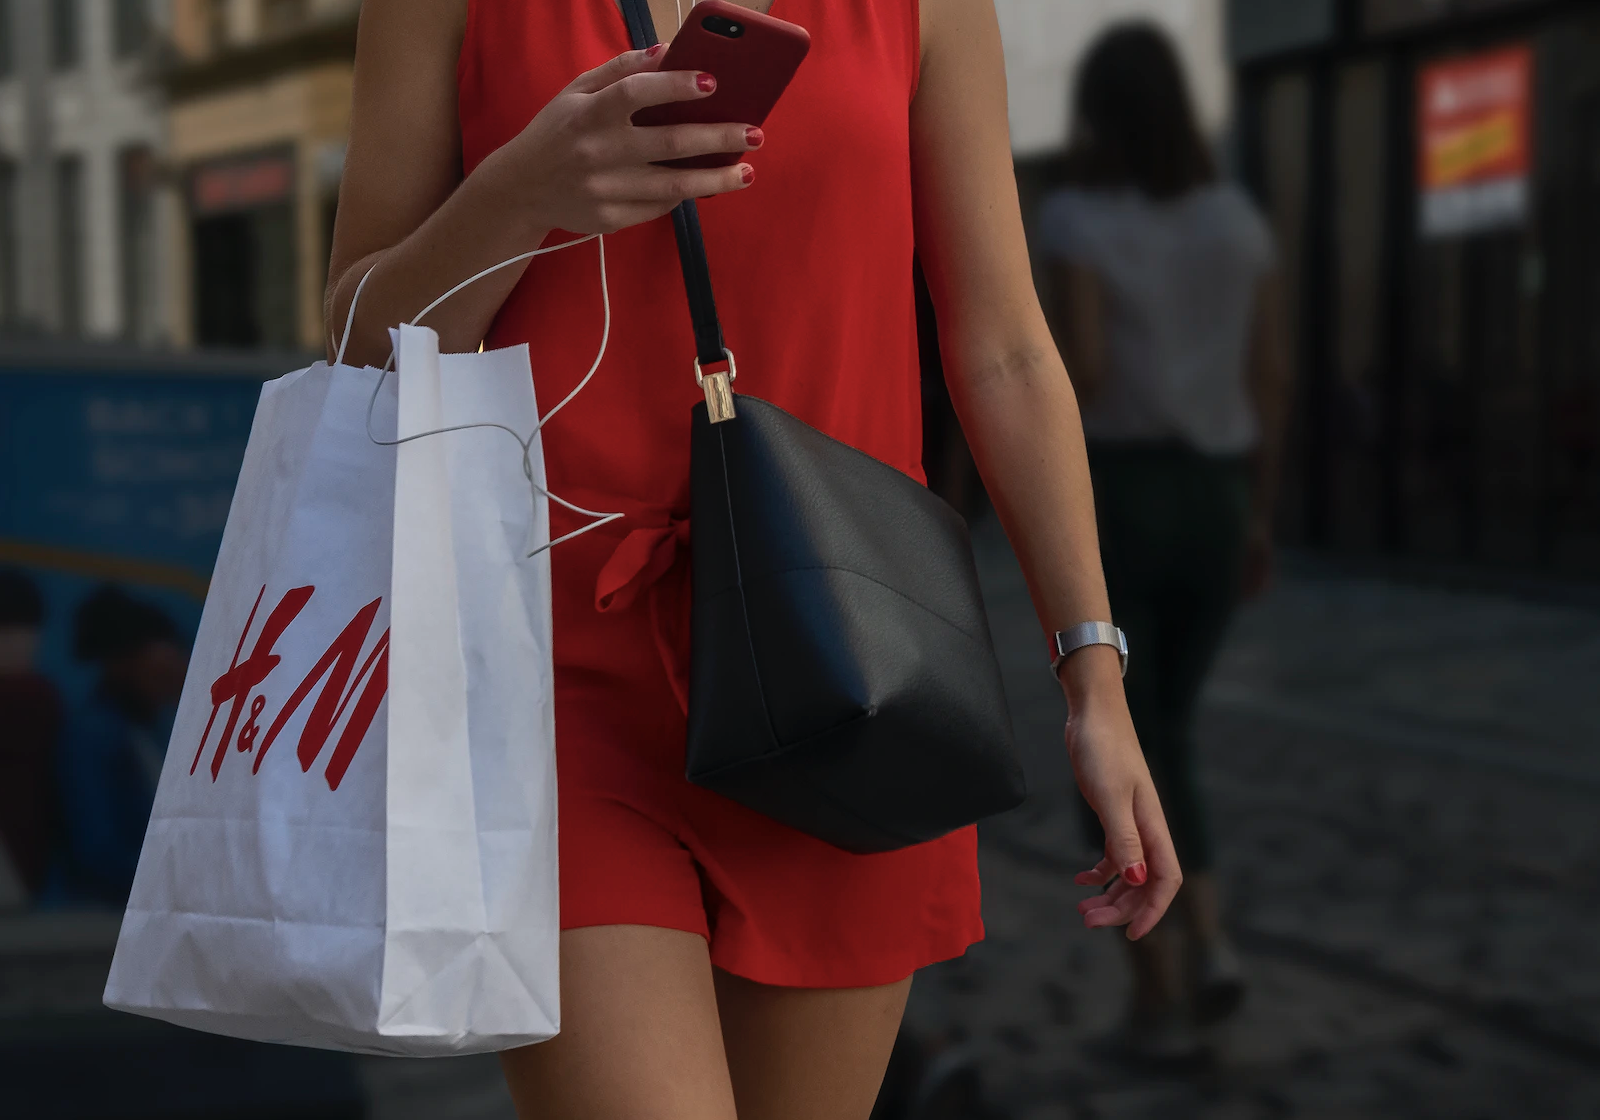 Woman carrying an H&M shopping bag